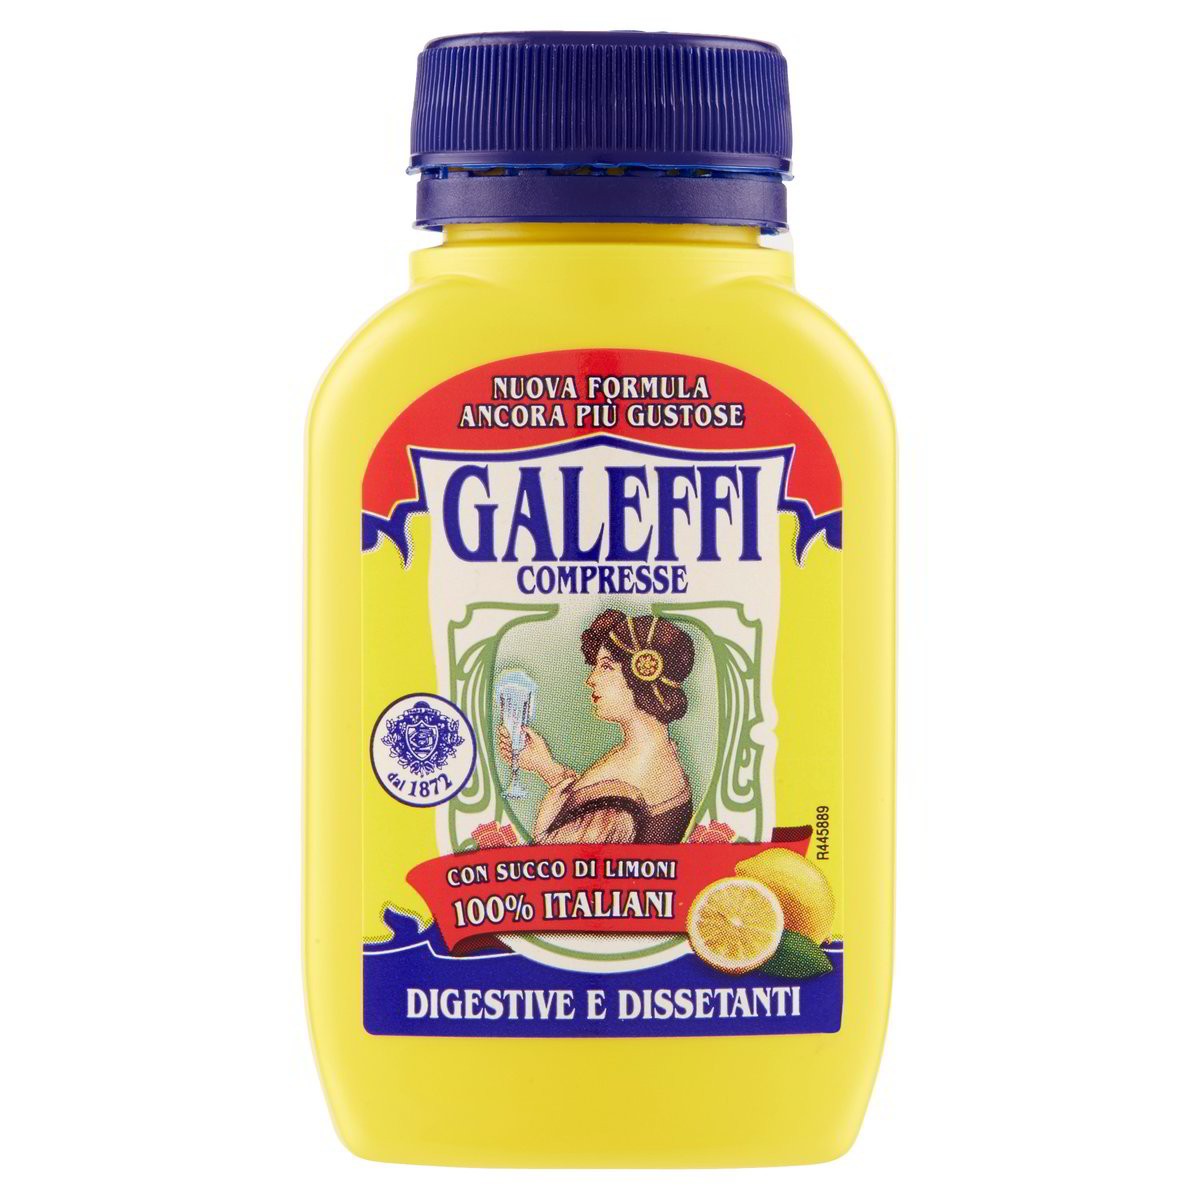 GALEFFI Compresse Digestive